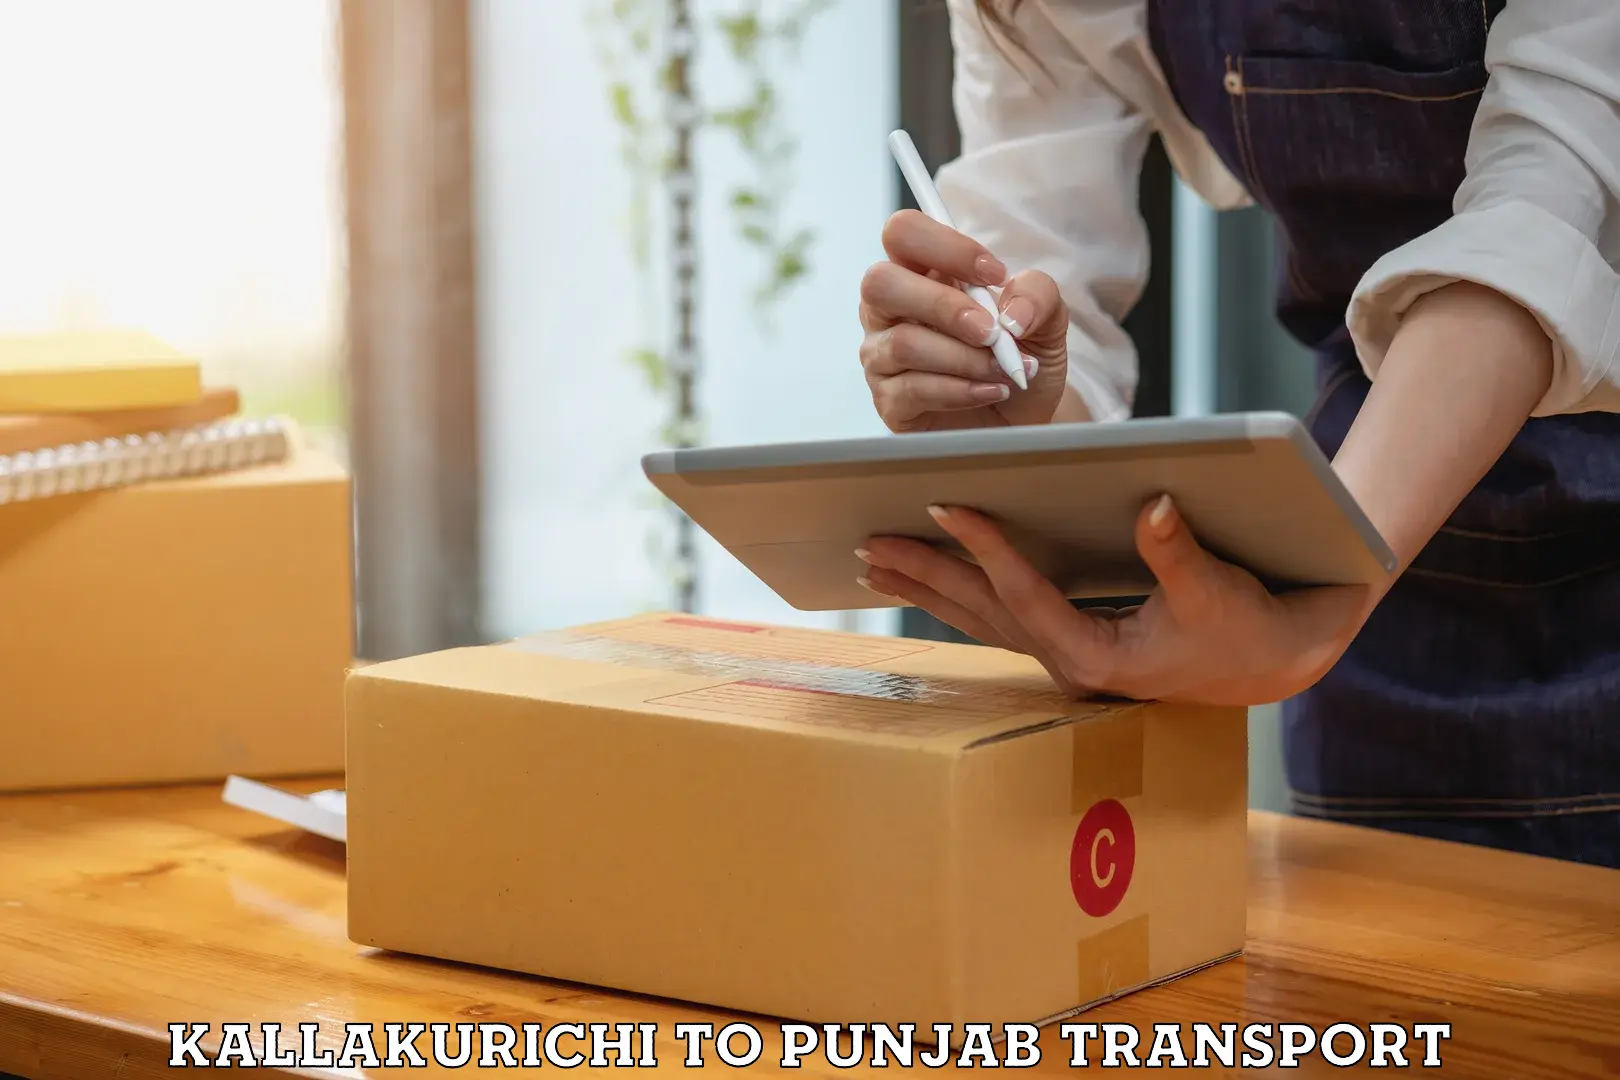 Road transport online services Kallakurichi to Punjab